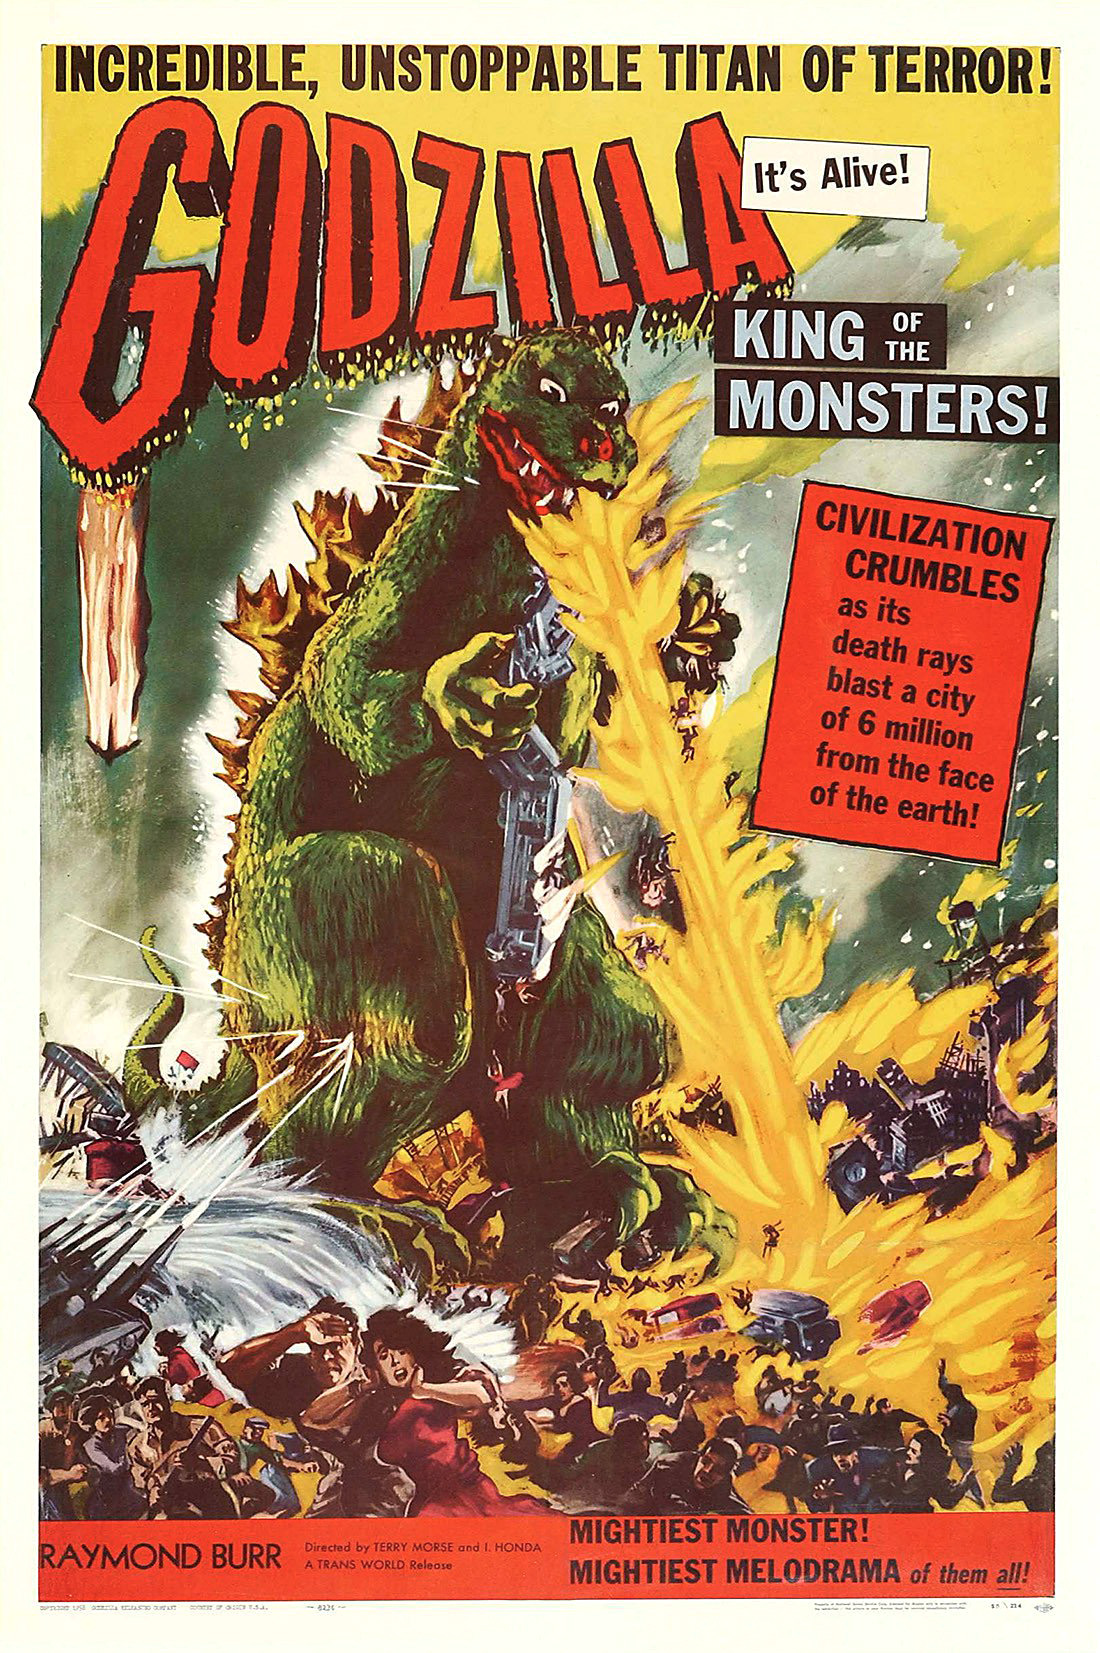 image for Godzilla